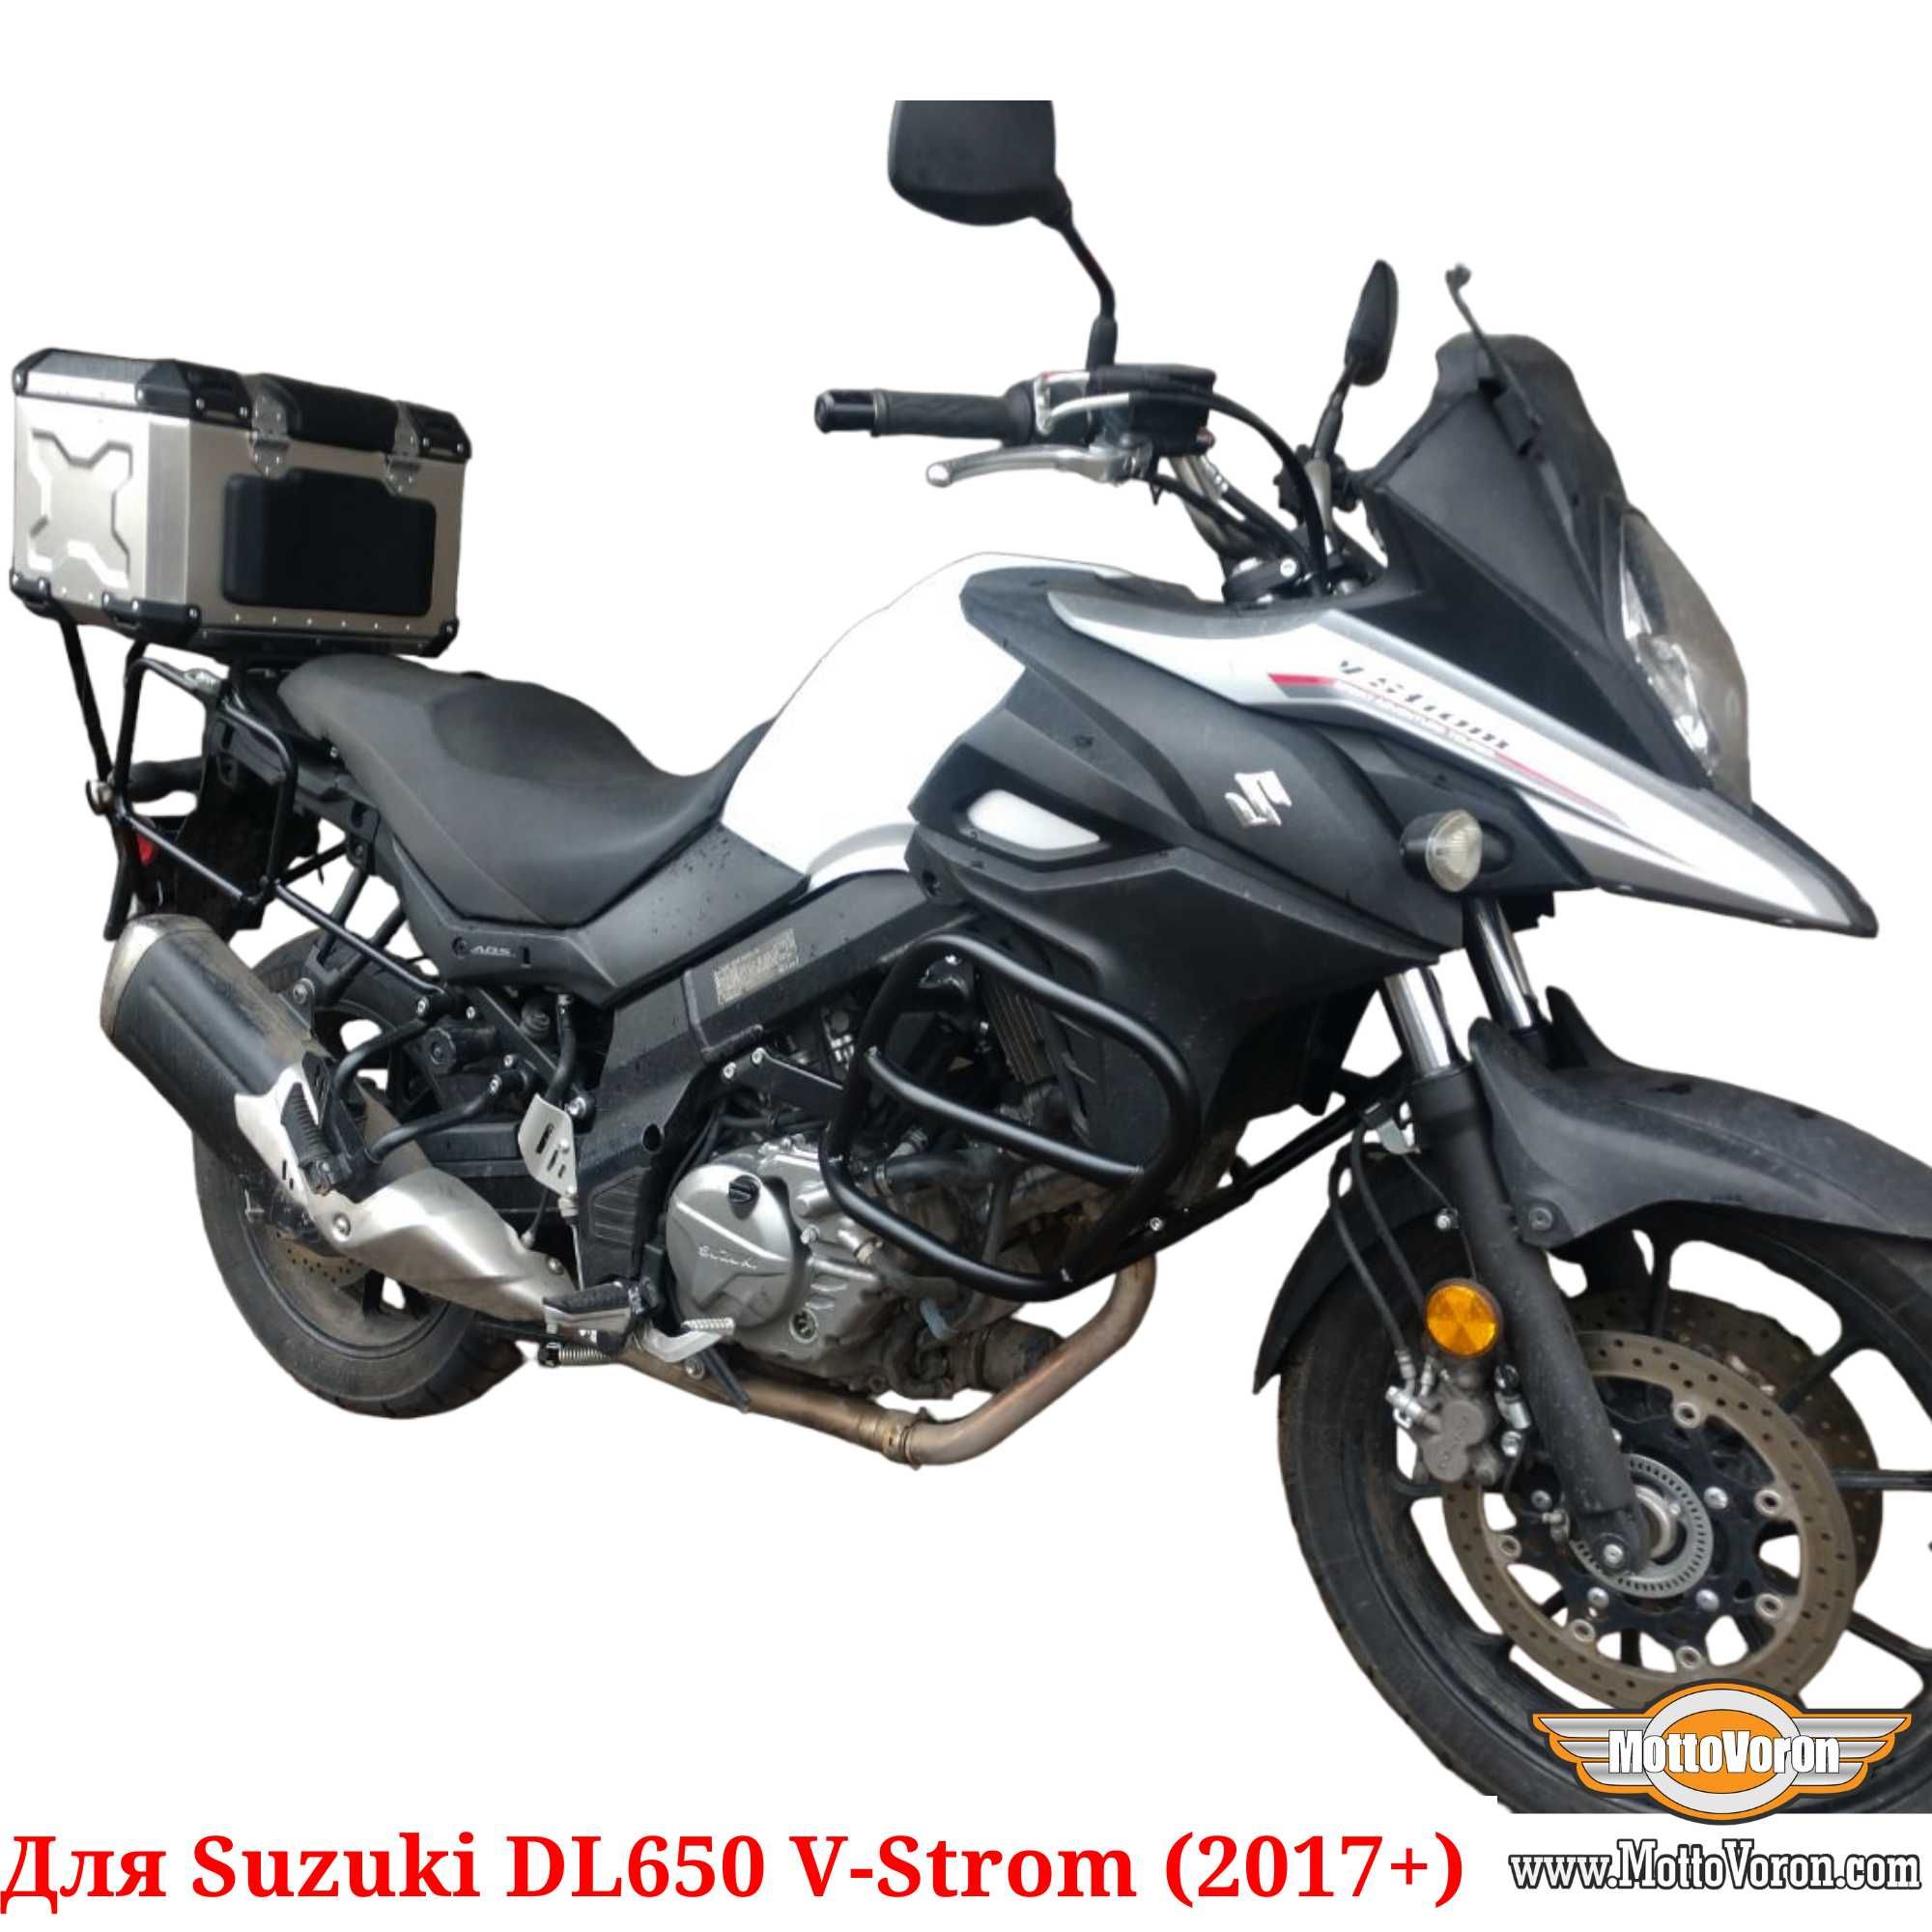 Защитные дуги Suzuki DL650 клетка защита обвес V-Strom 650 (2017+)